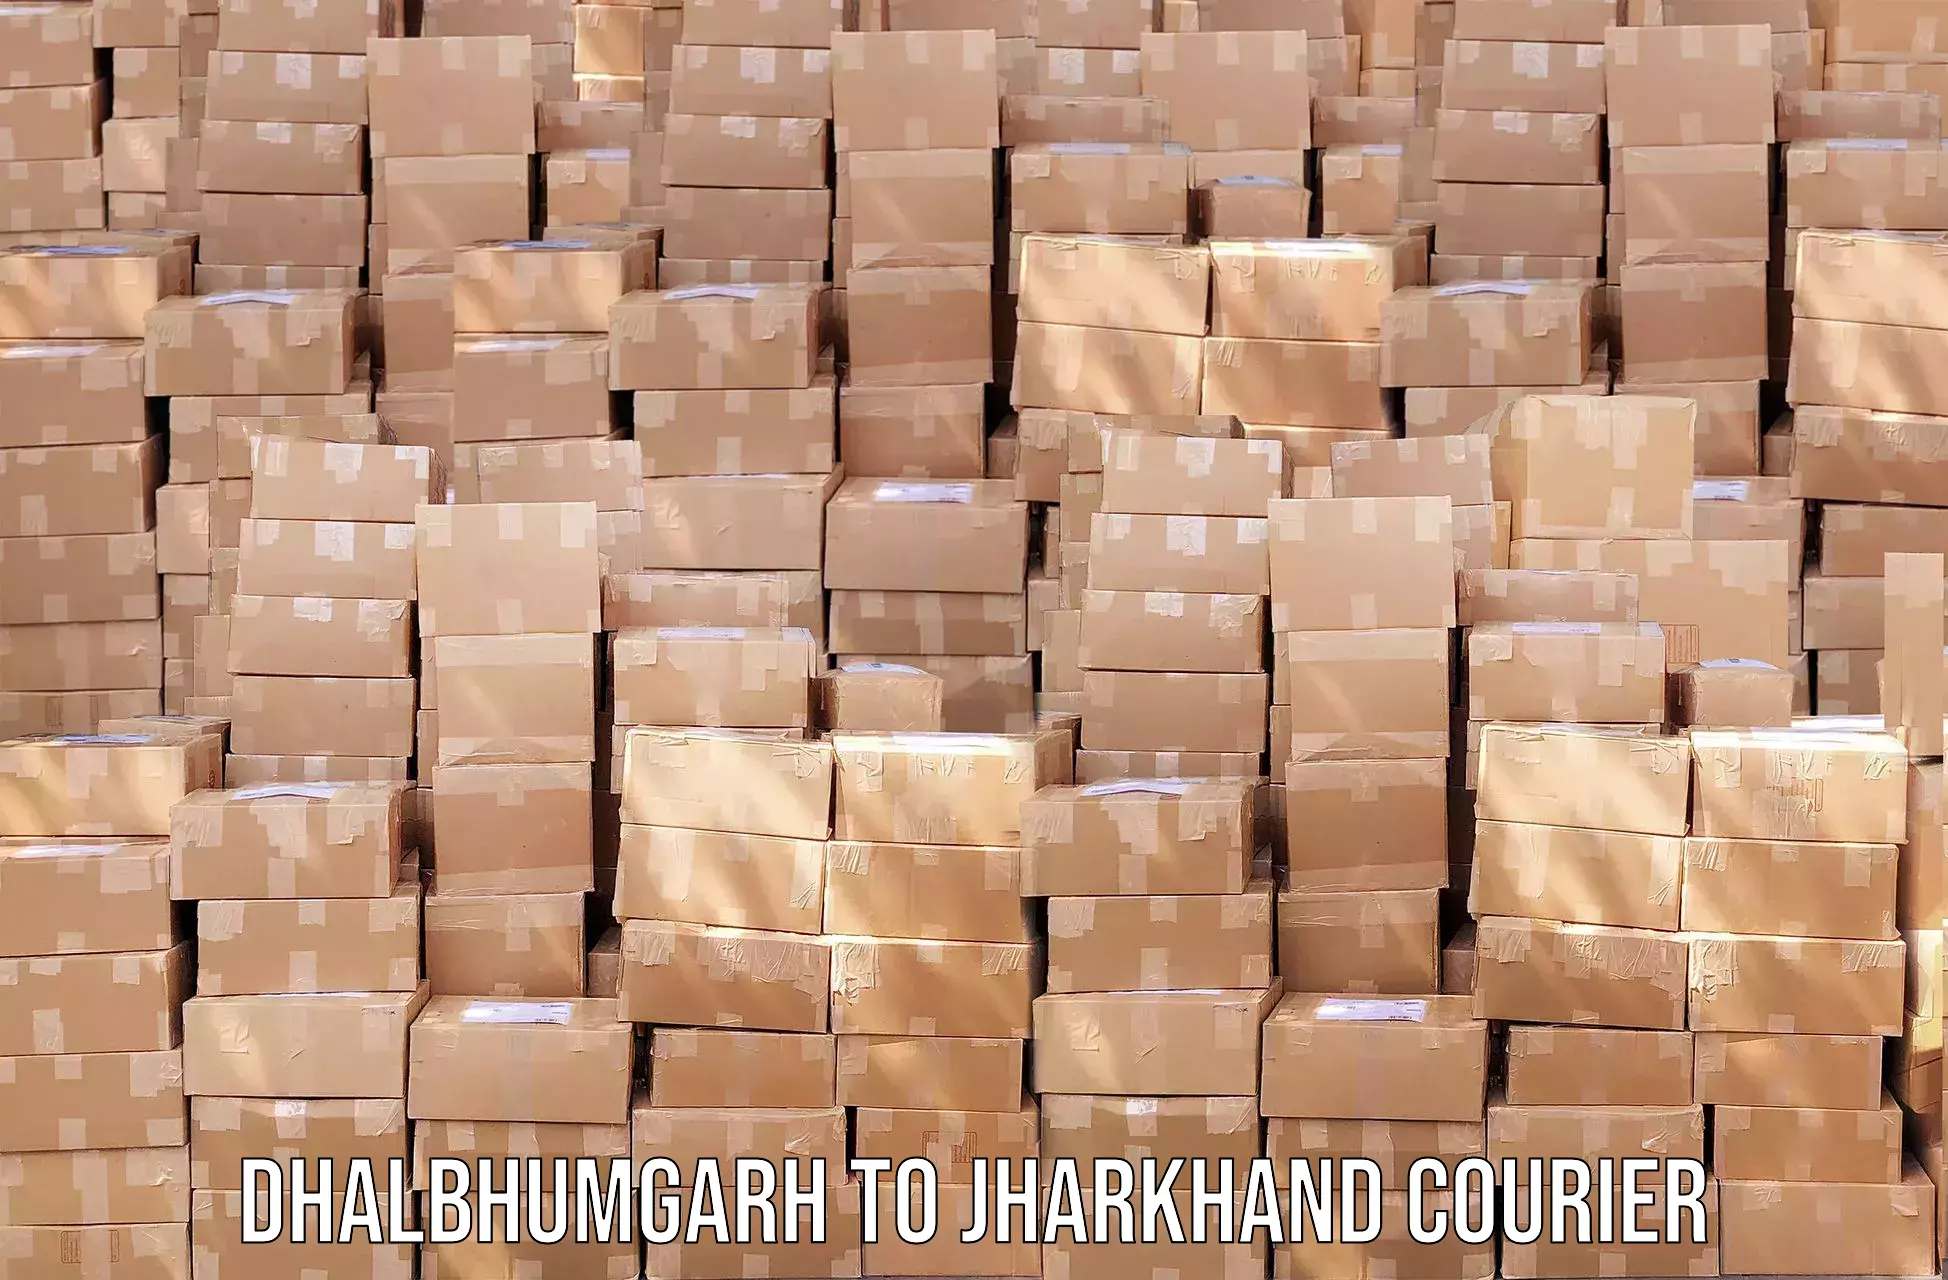 Efficient parcel tracking Dhalbhumgarh to Medininagar